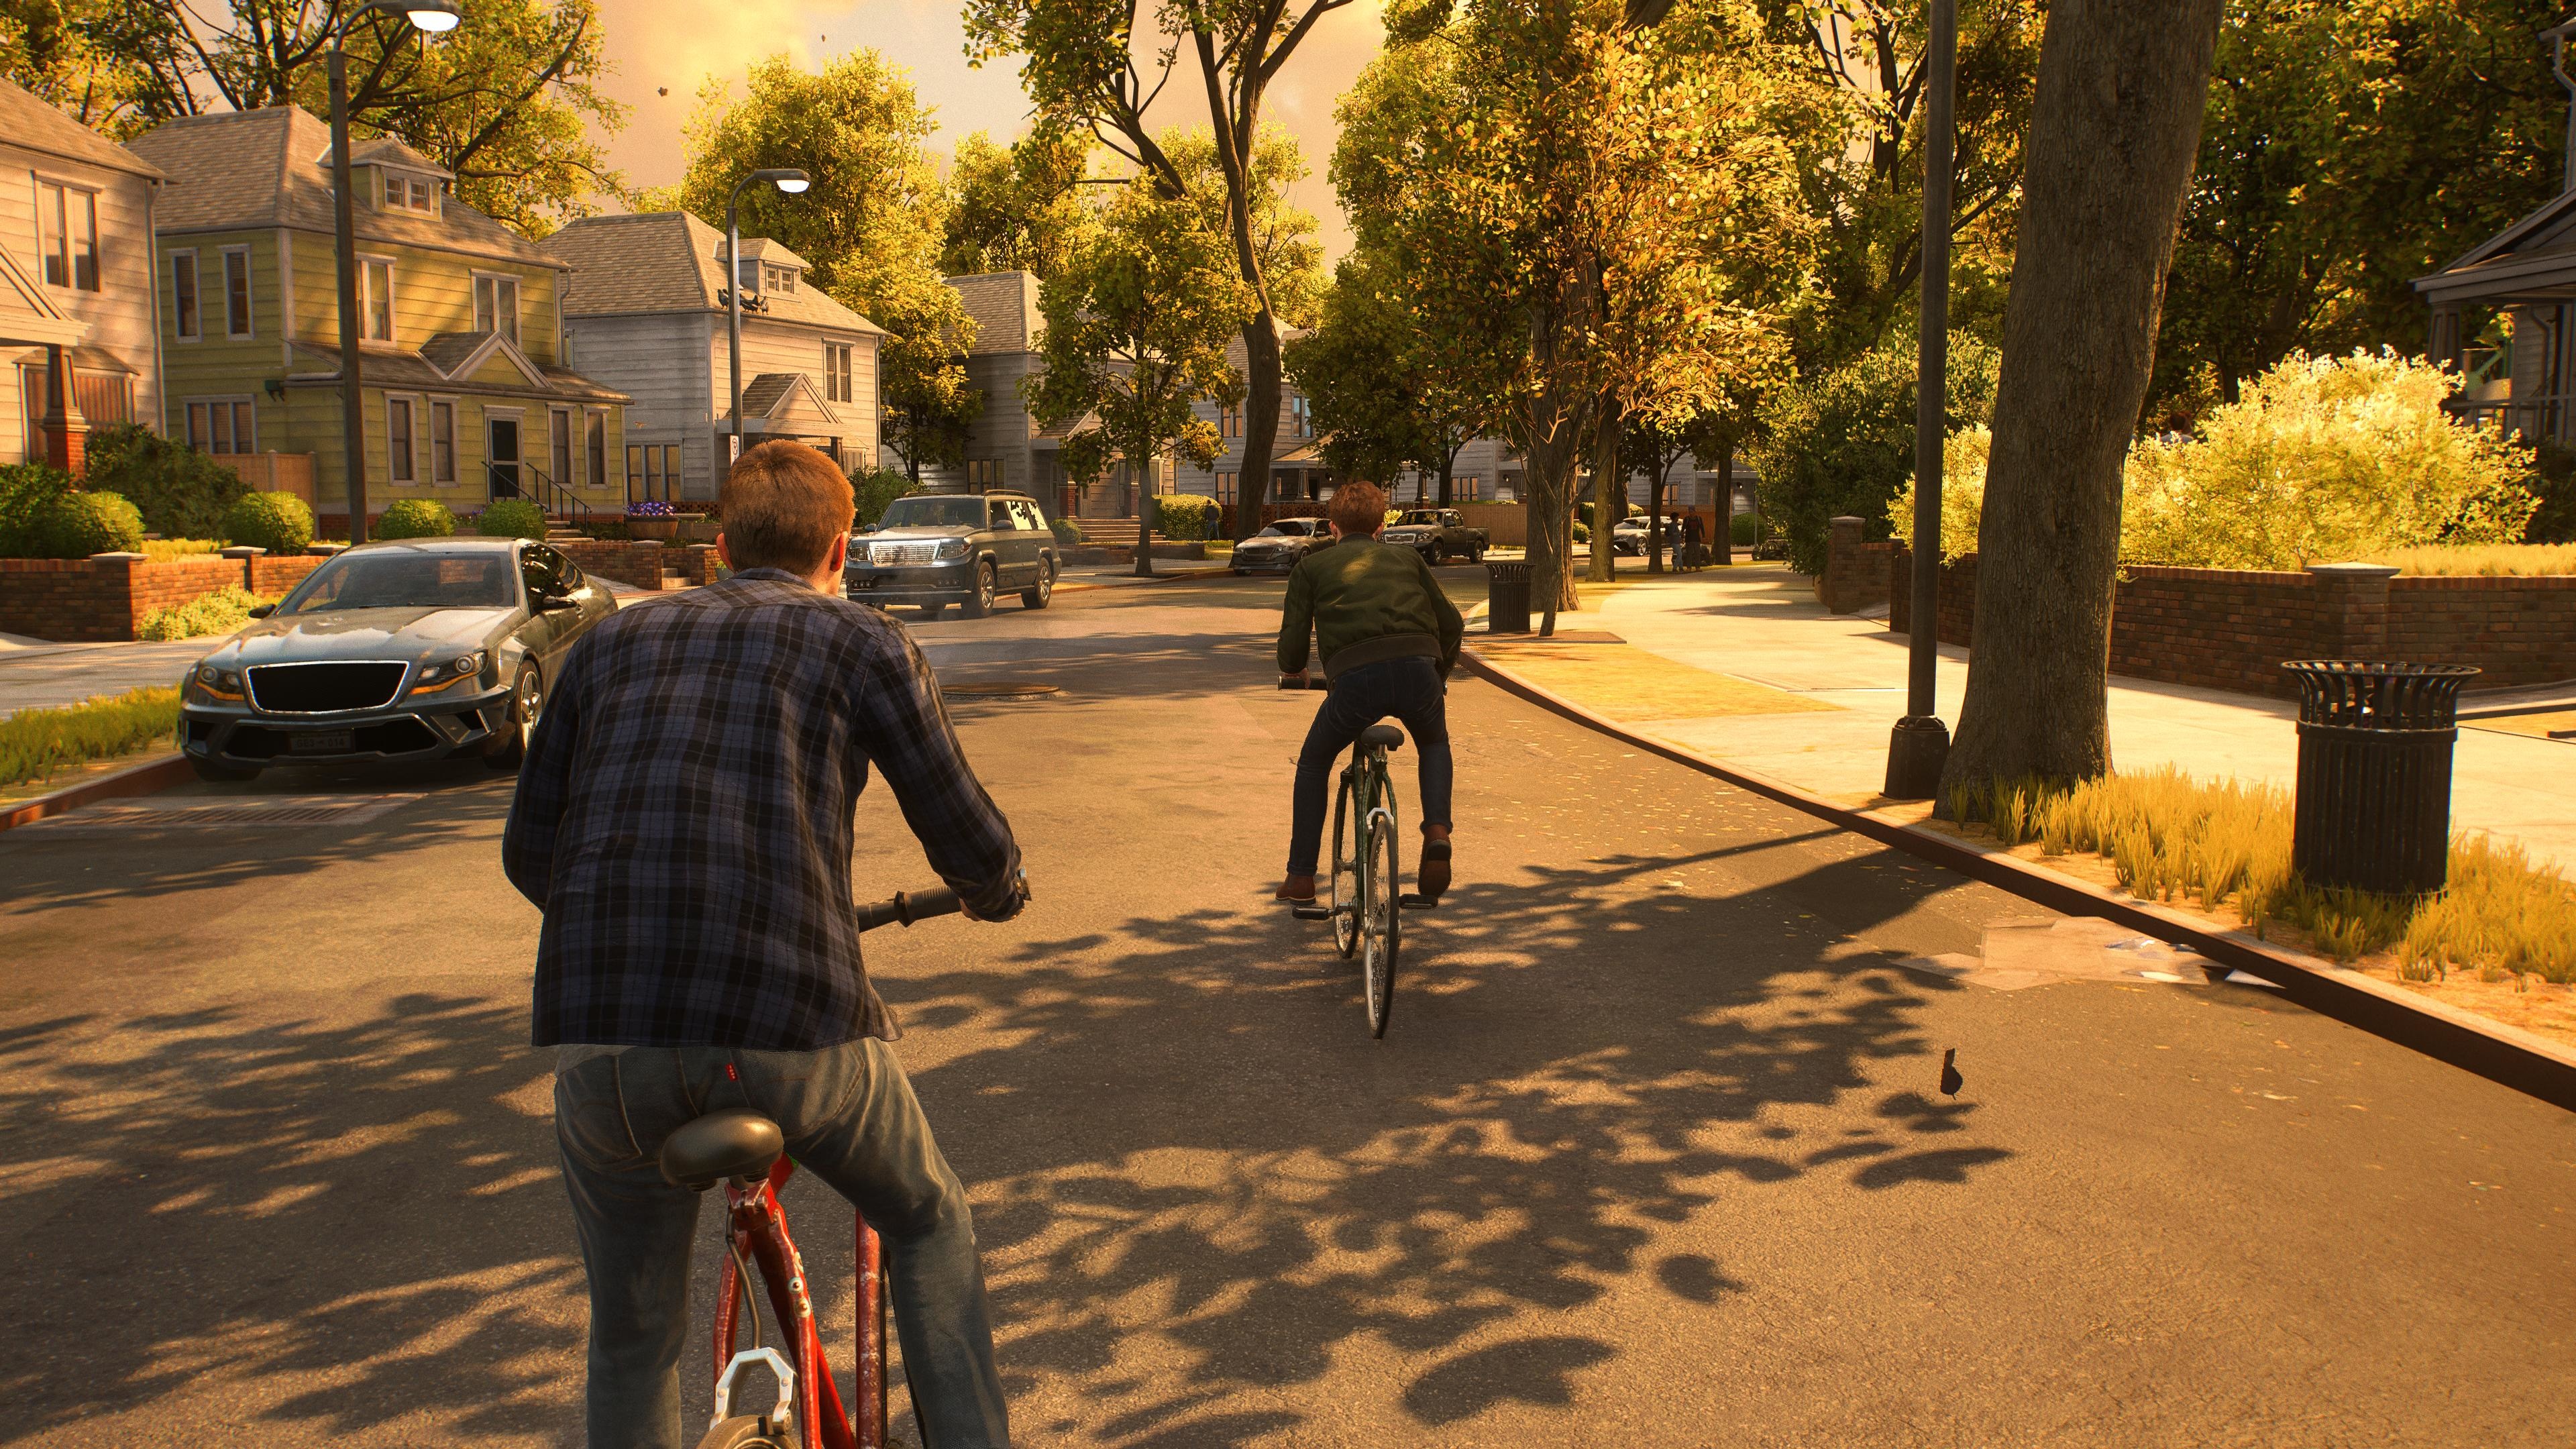  (Peter e Harry ricordano mentre vanno in bicicletta nel Queens. Spider Man 2 non si limita all''azione)